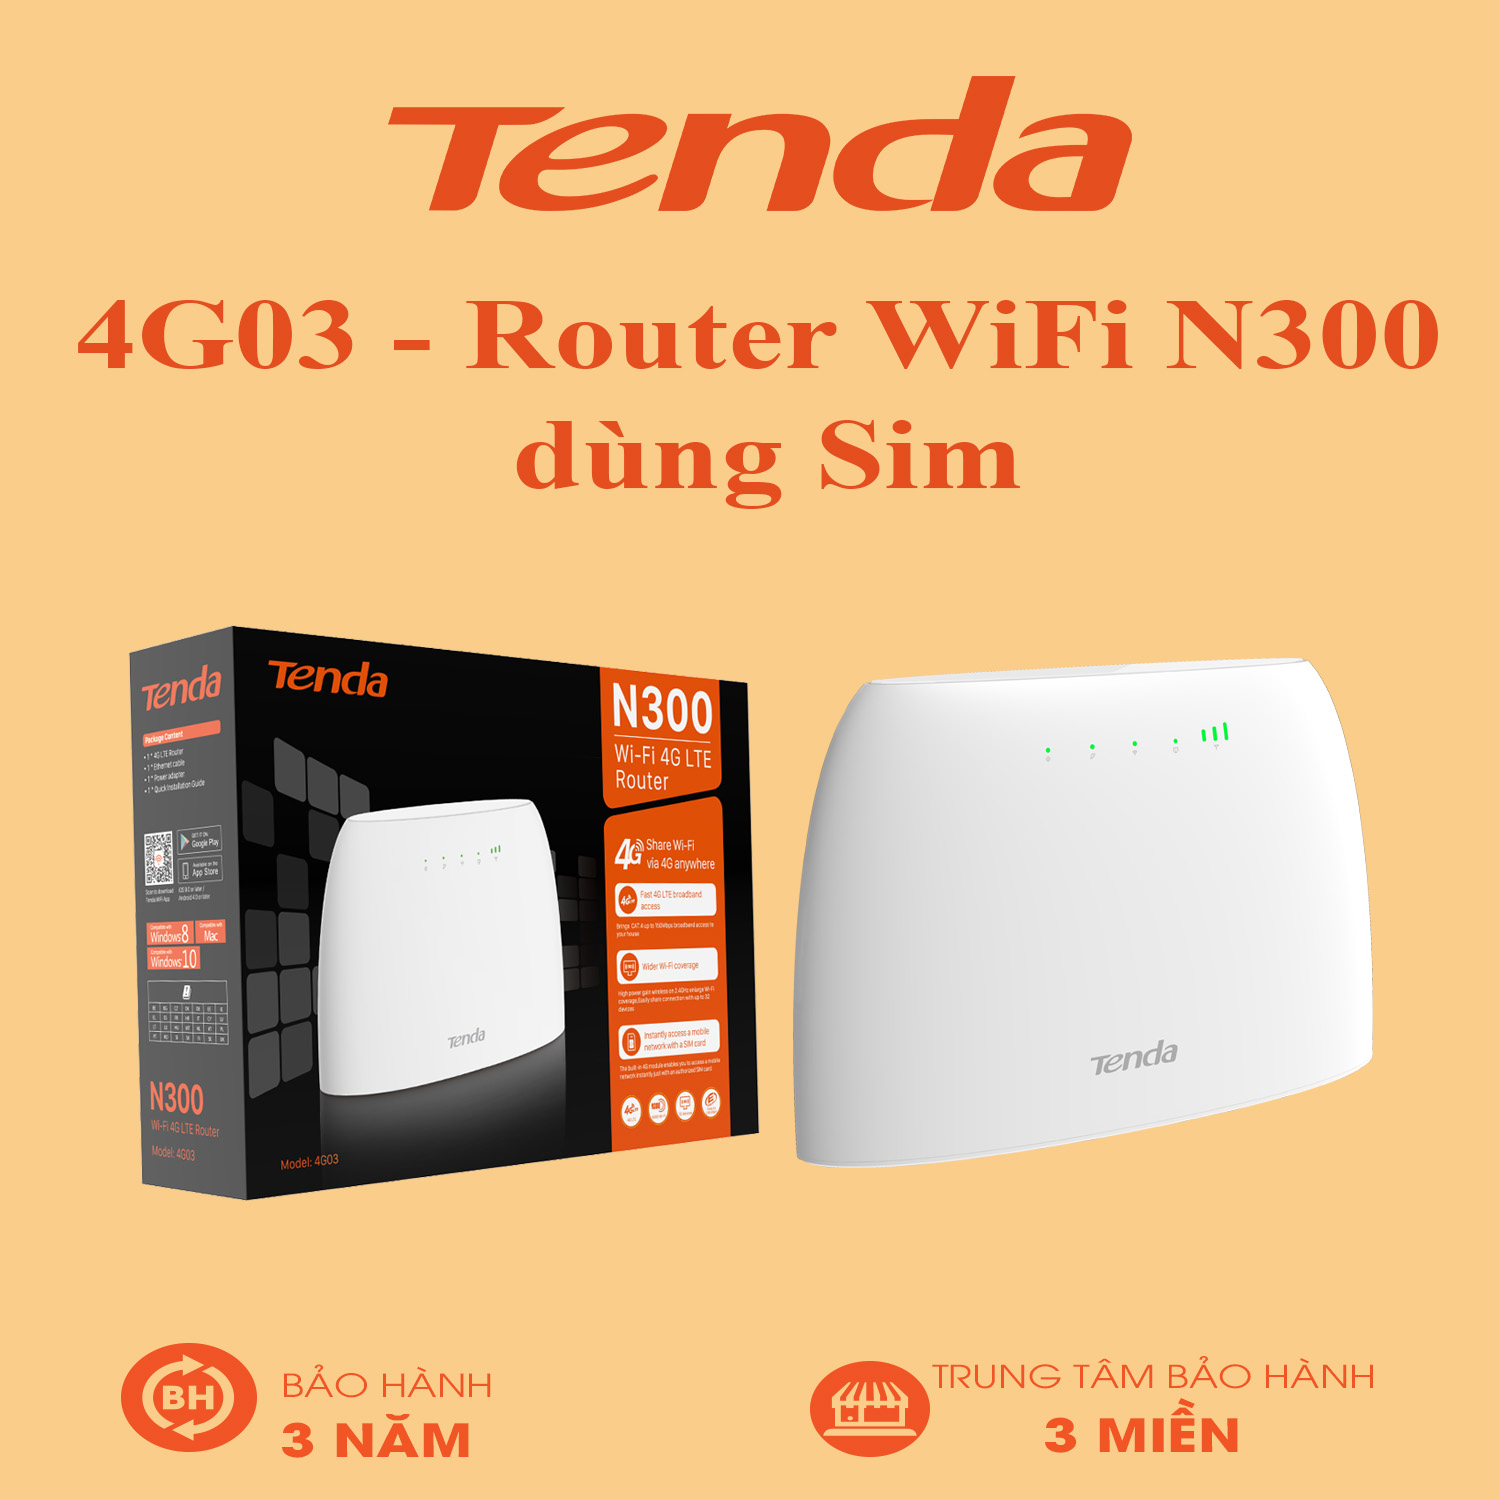 Tenda 4G03 - Router WiFi N300 dùng Sim 4G LTE - Bảo Hành 36 Tháng